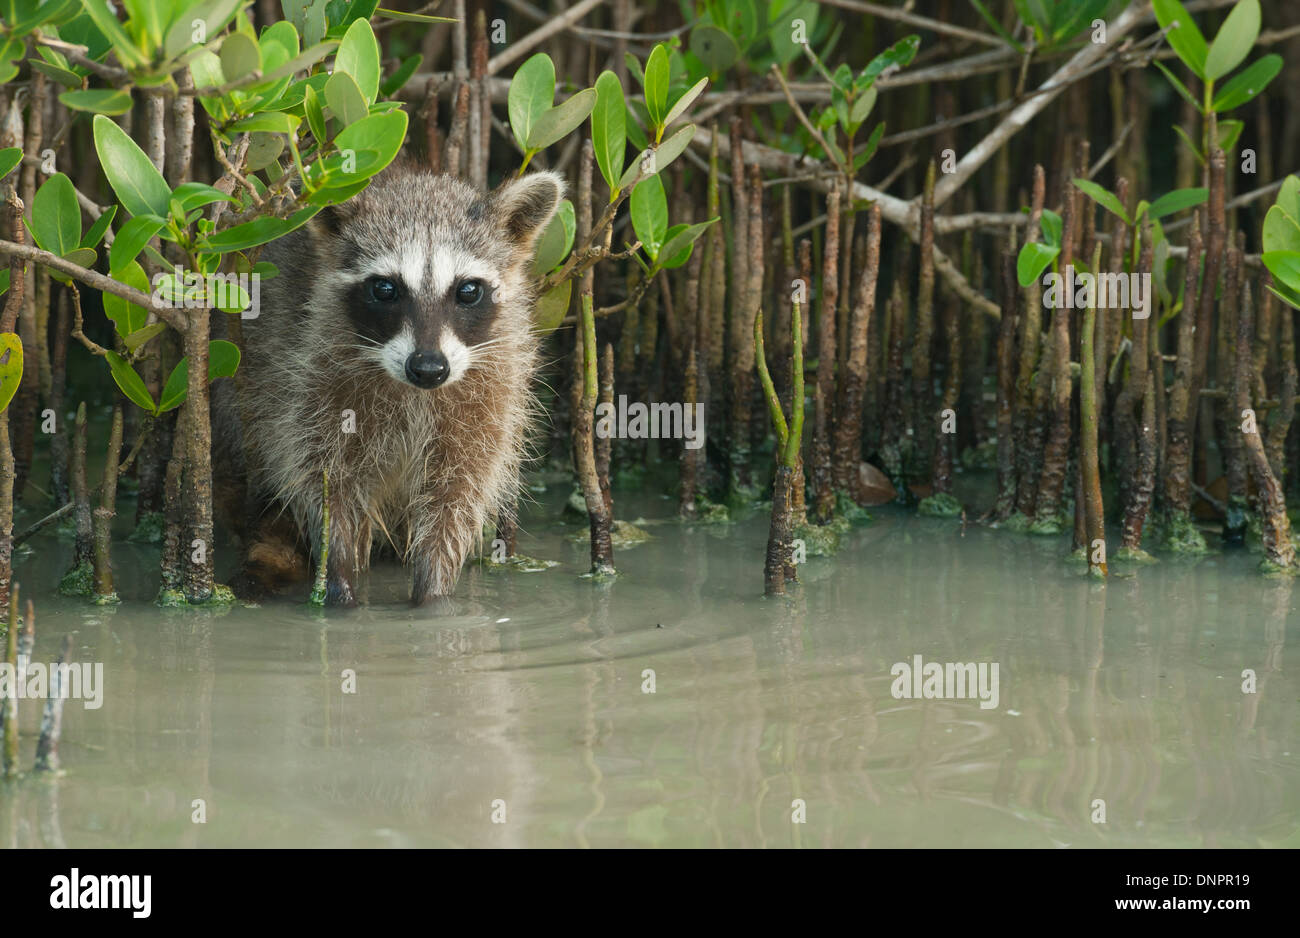 Le Raton laveur (Procyon pygmaeus) En danger critique d'extinction, l'île de Cozumel, au Mexique. Moins de 500 restent dans l'existence. Banque D'Images